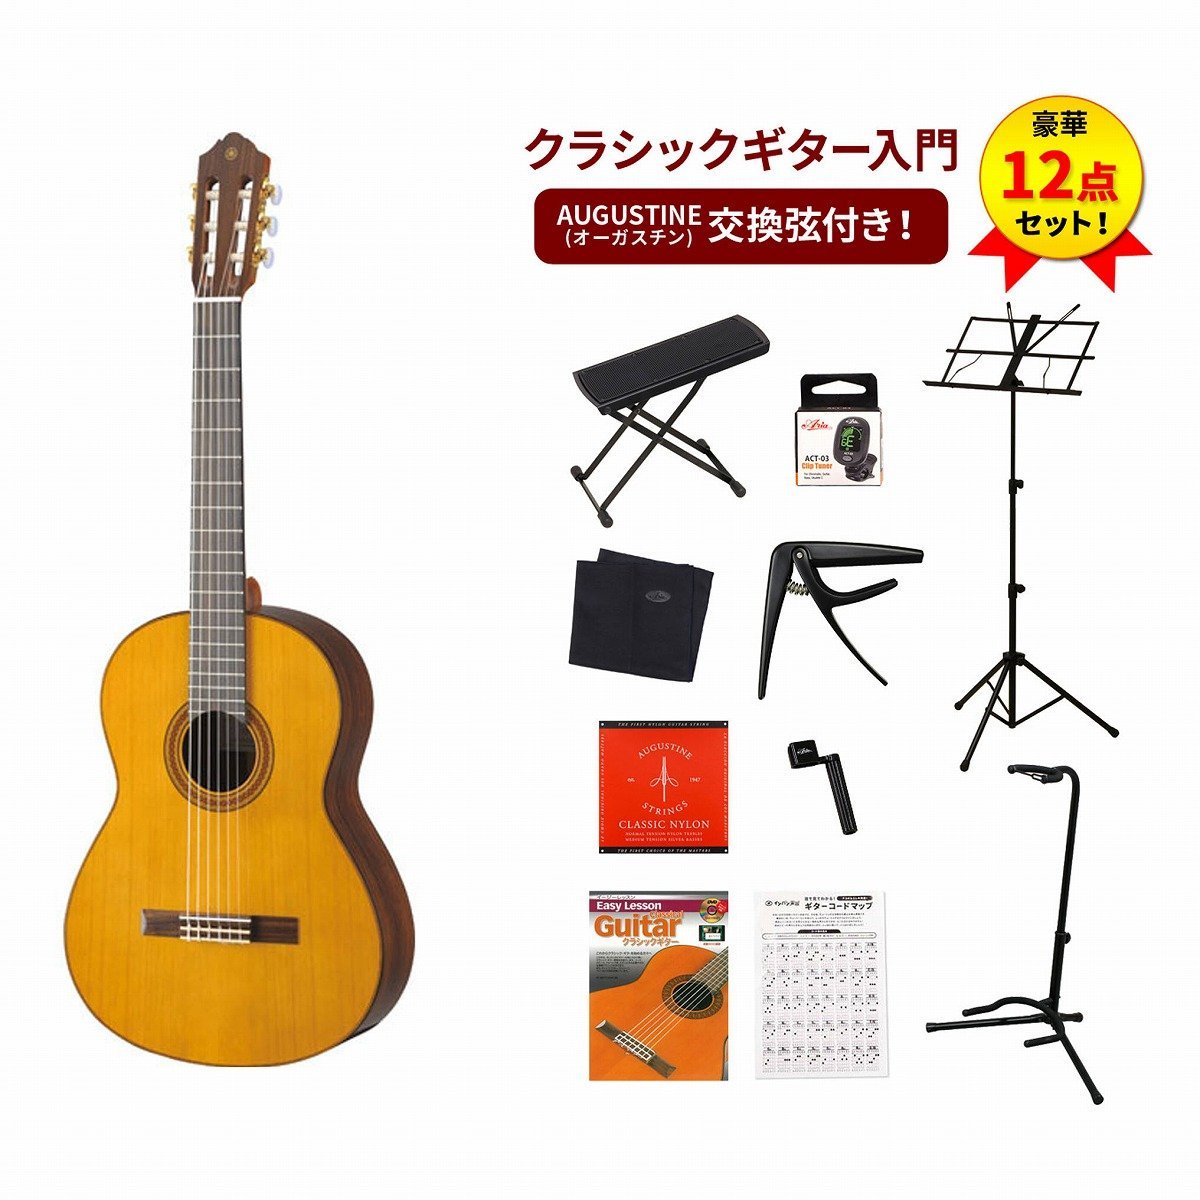 YAMAHA CG182C クラシックギタークラシックギター入門豪華12点セット